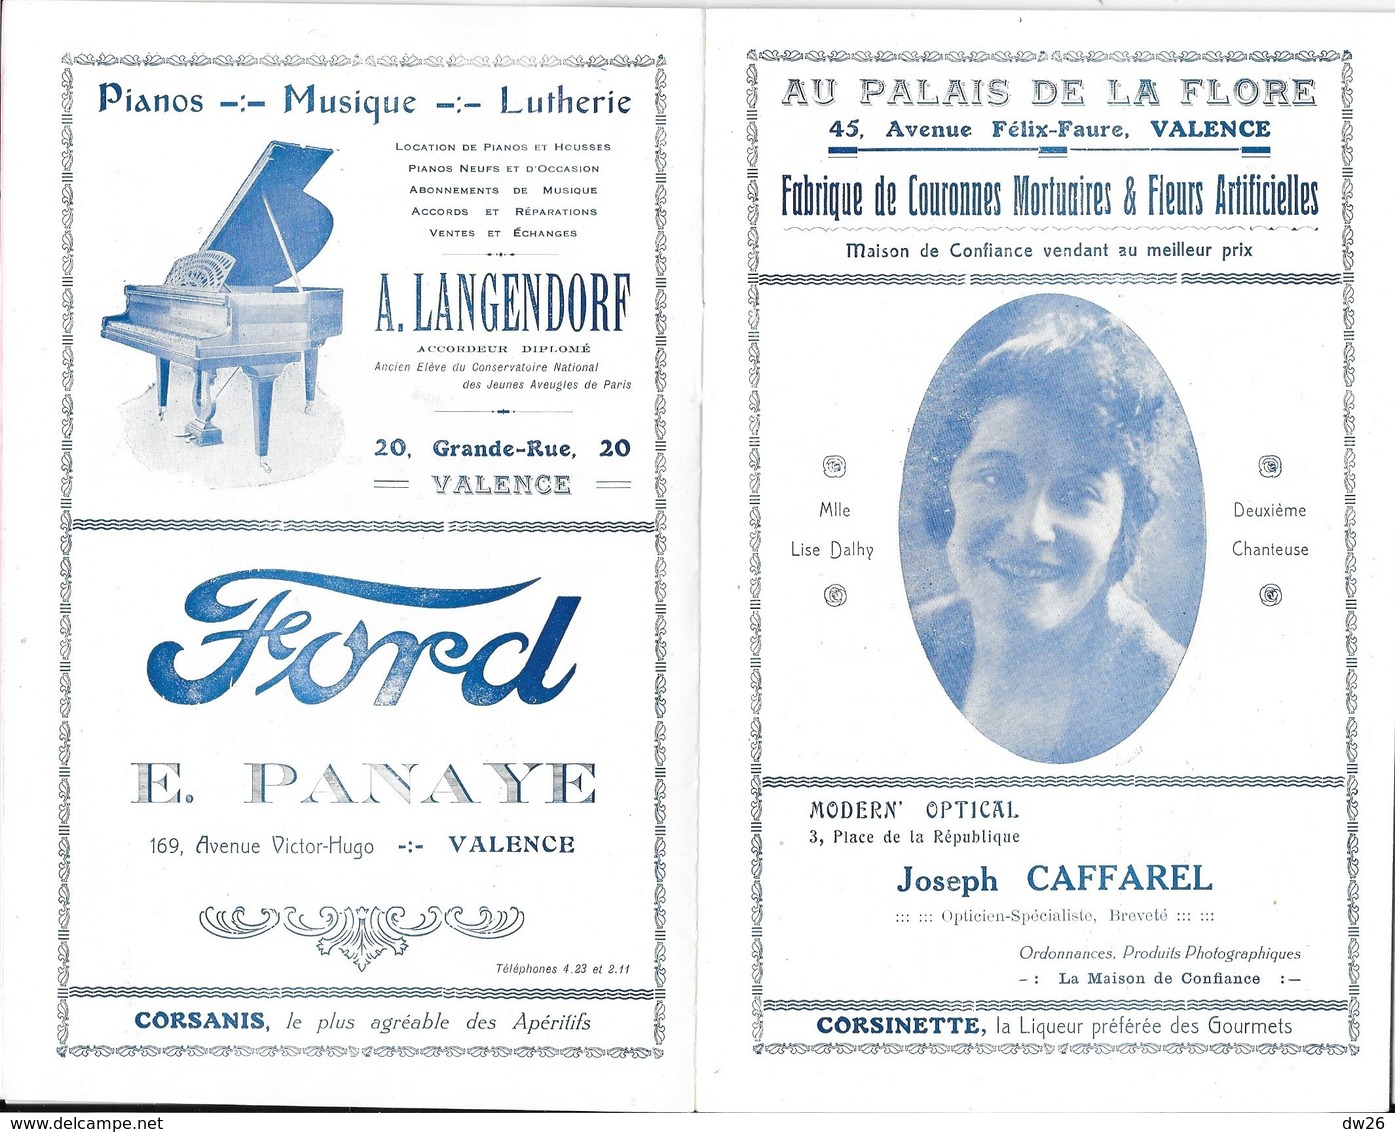 Ville De Valence - Programme Officiel De L'Opéra Municipal, Saison 1925-26 - Opérette: P.L.M., Artistes - Programs